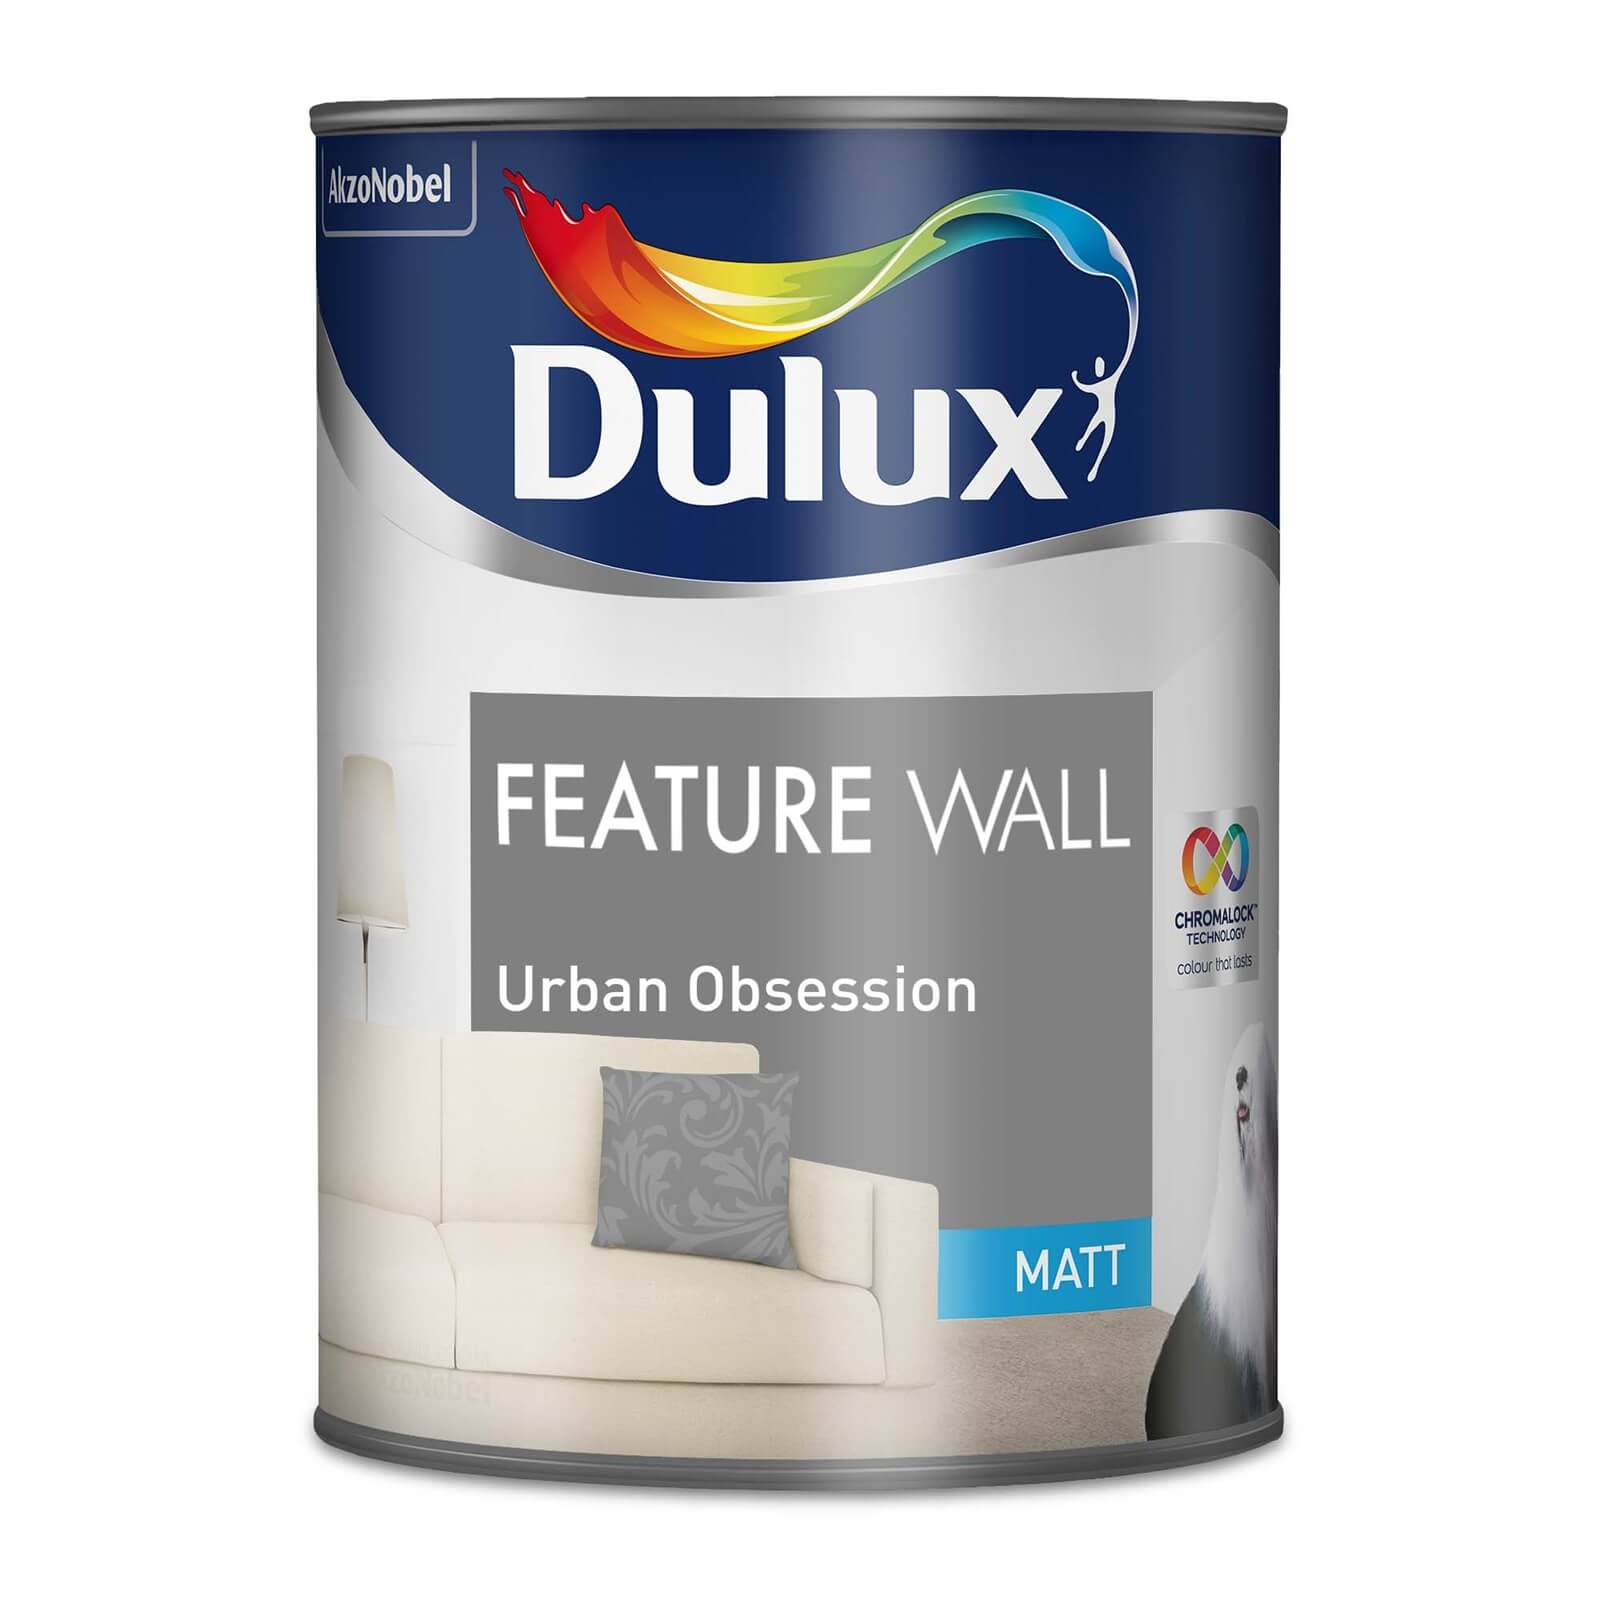 Dulux Feature Wall Urban Obsession - Matt Emulsion Paint - 1.25L